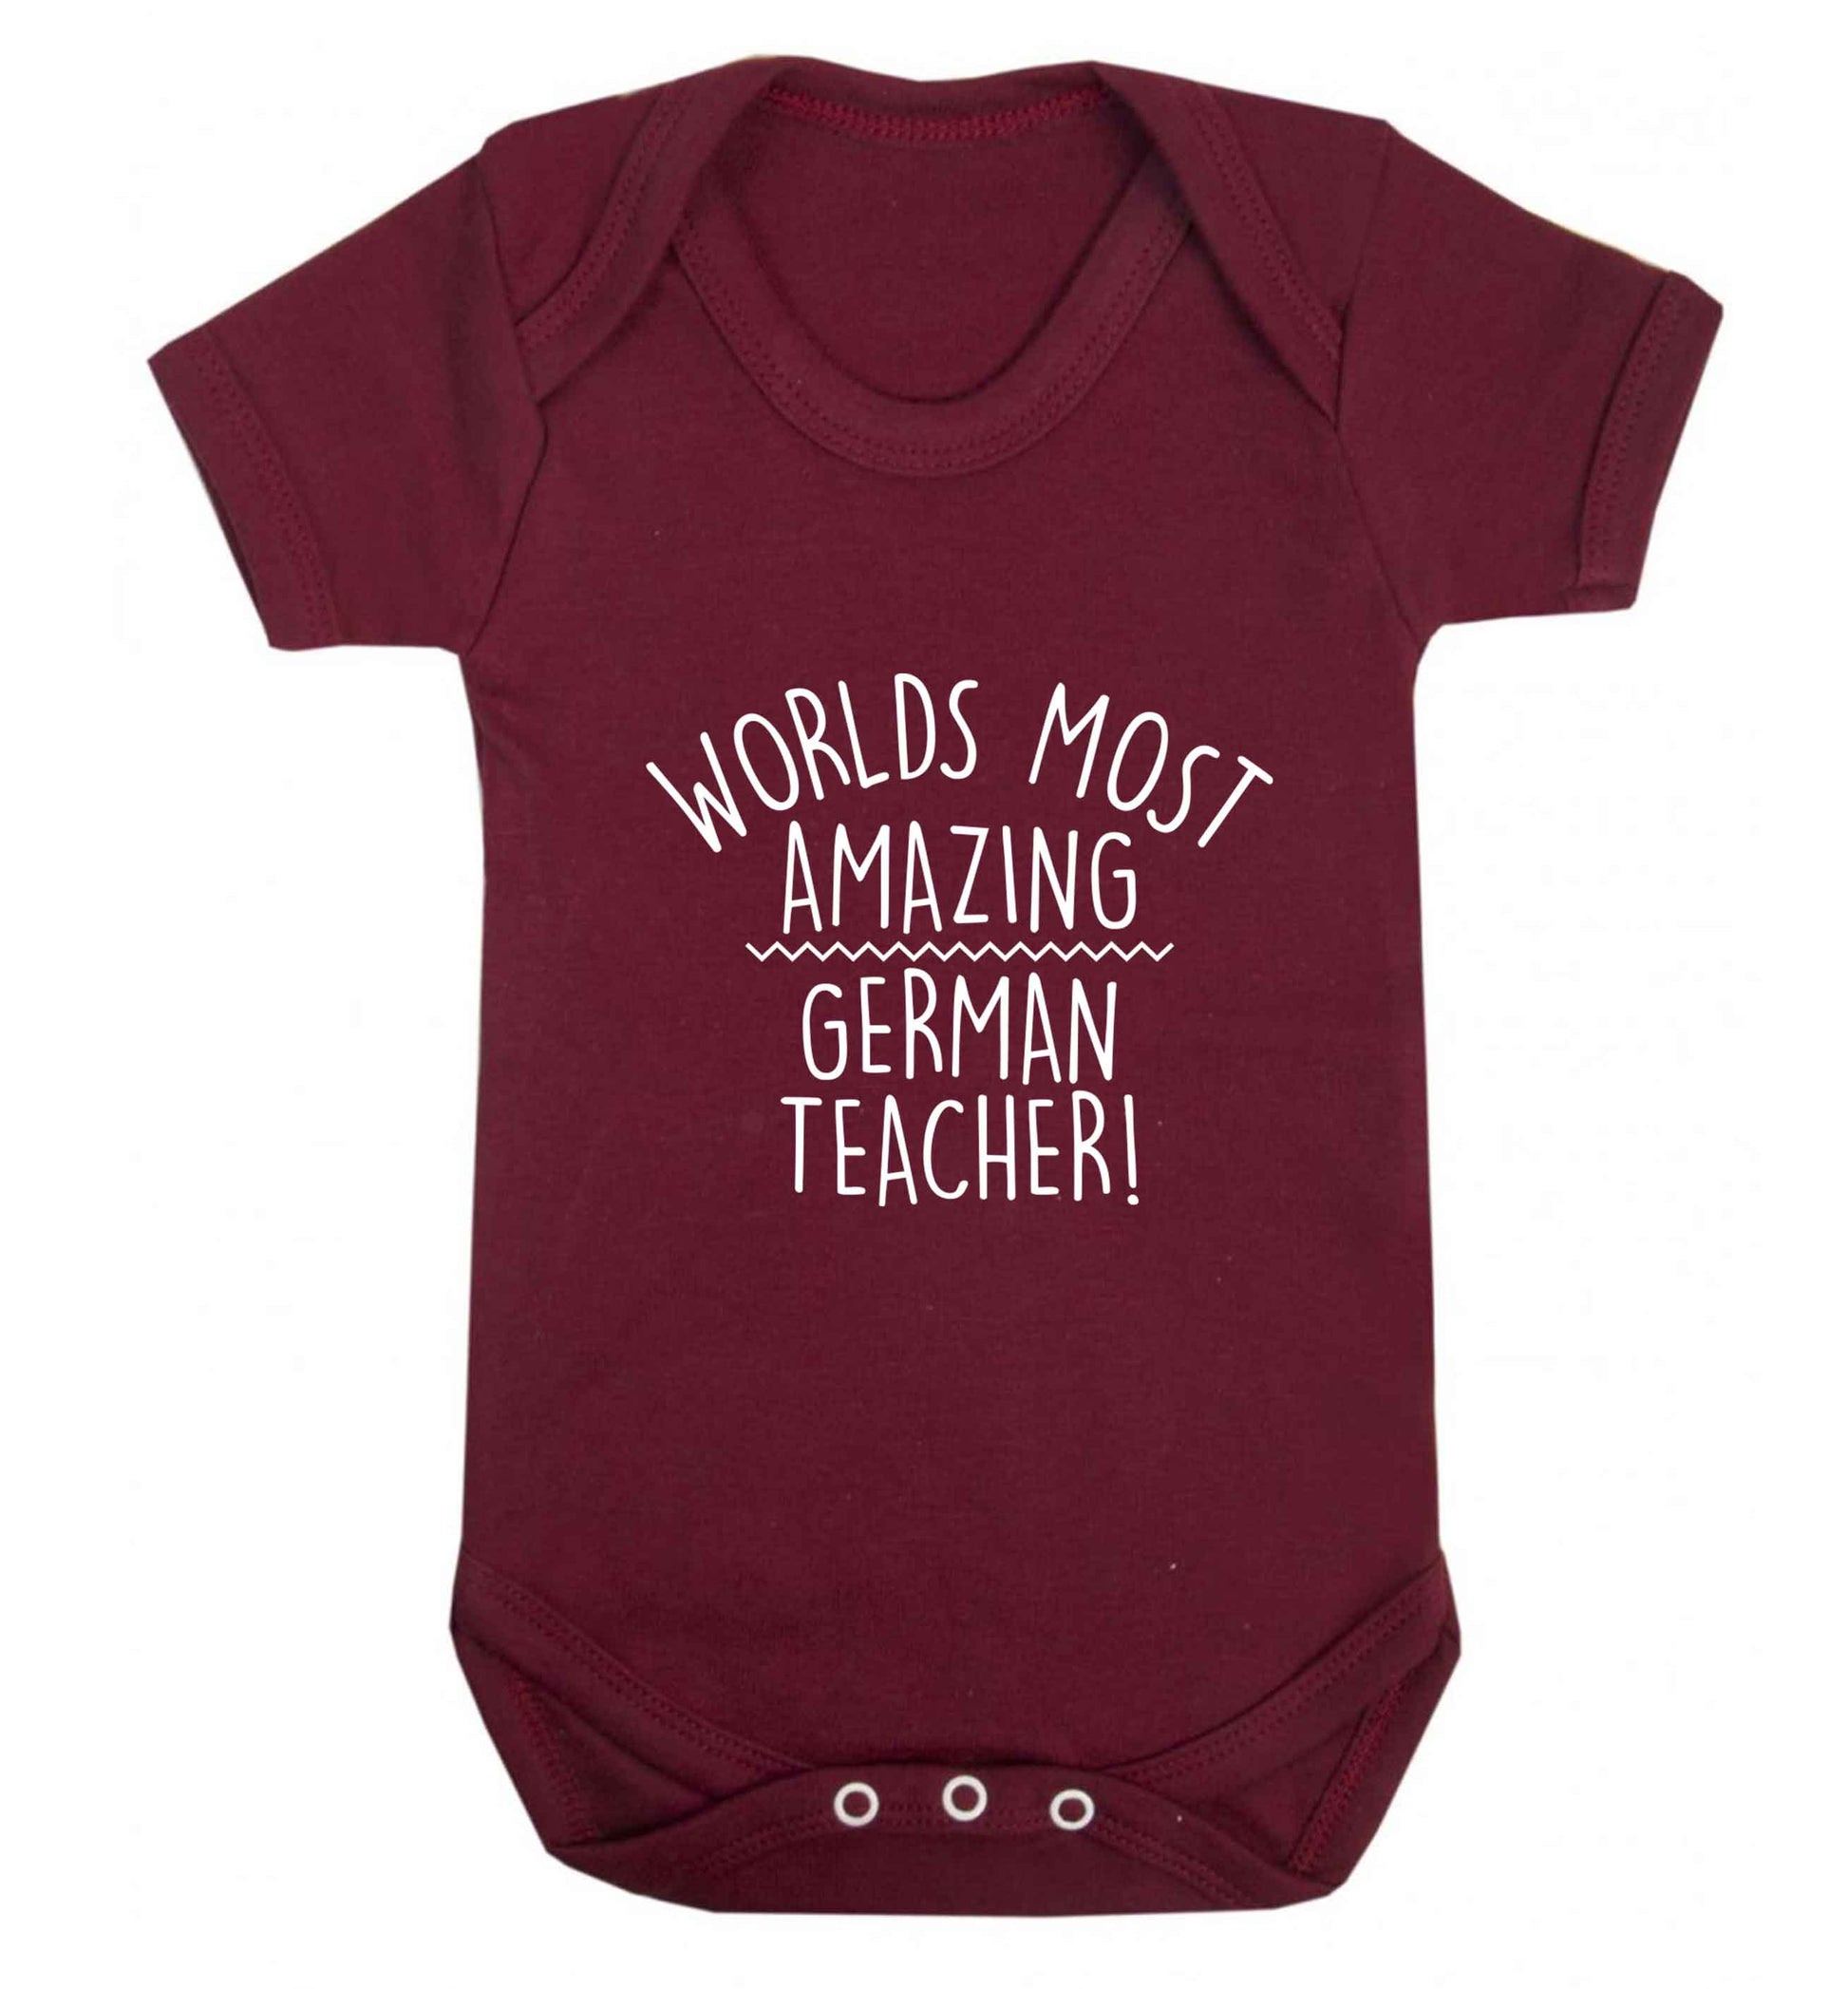 Worlds most amazing German teacher baby vest maroon 18-24 months